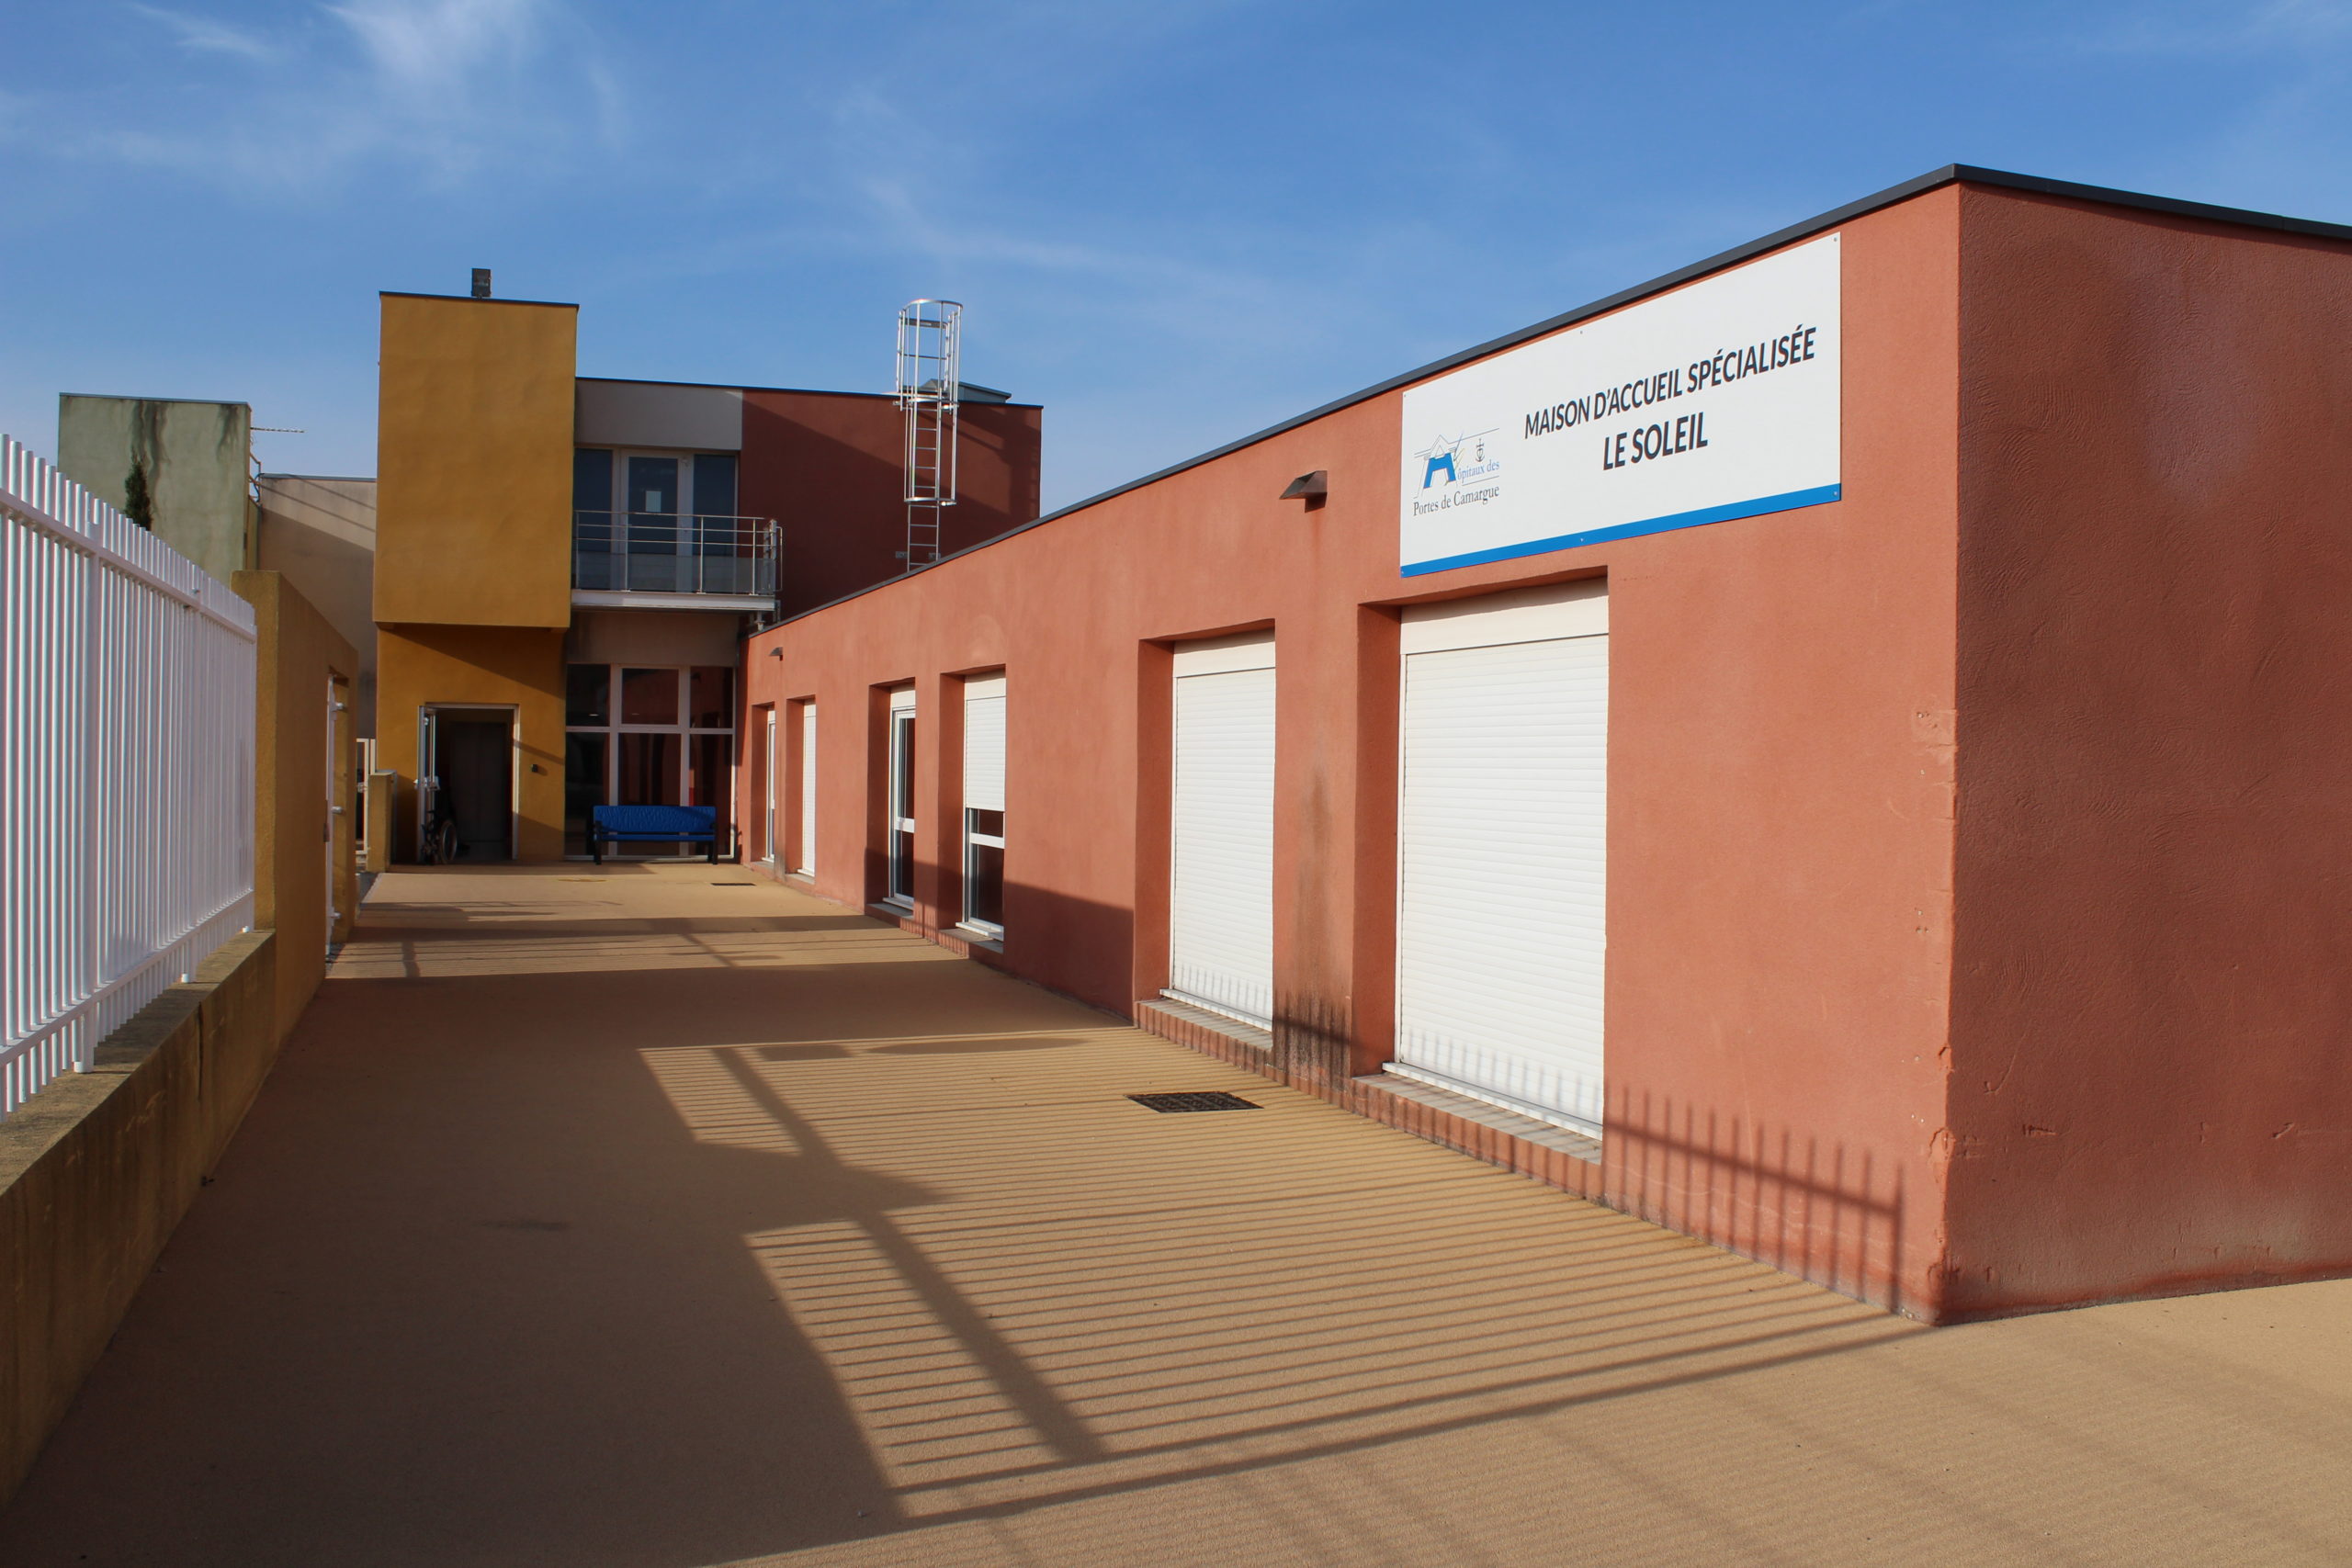 Entrée de la Maison d'accueil spécialisée (MAS) de l'hôpital de Tarascon située aux hôpitaux des Portes de Camargue. Cette MAS accueille des jeunes adultes polyhandicapés.